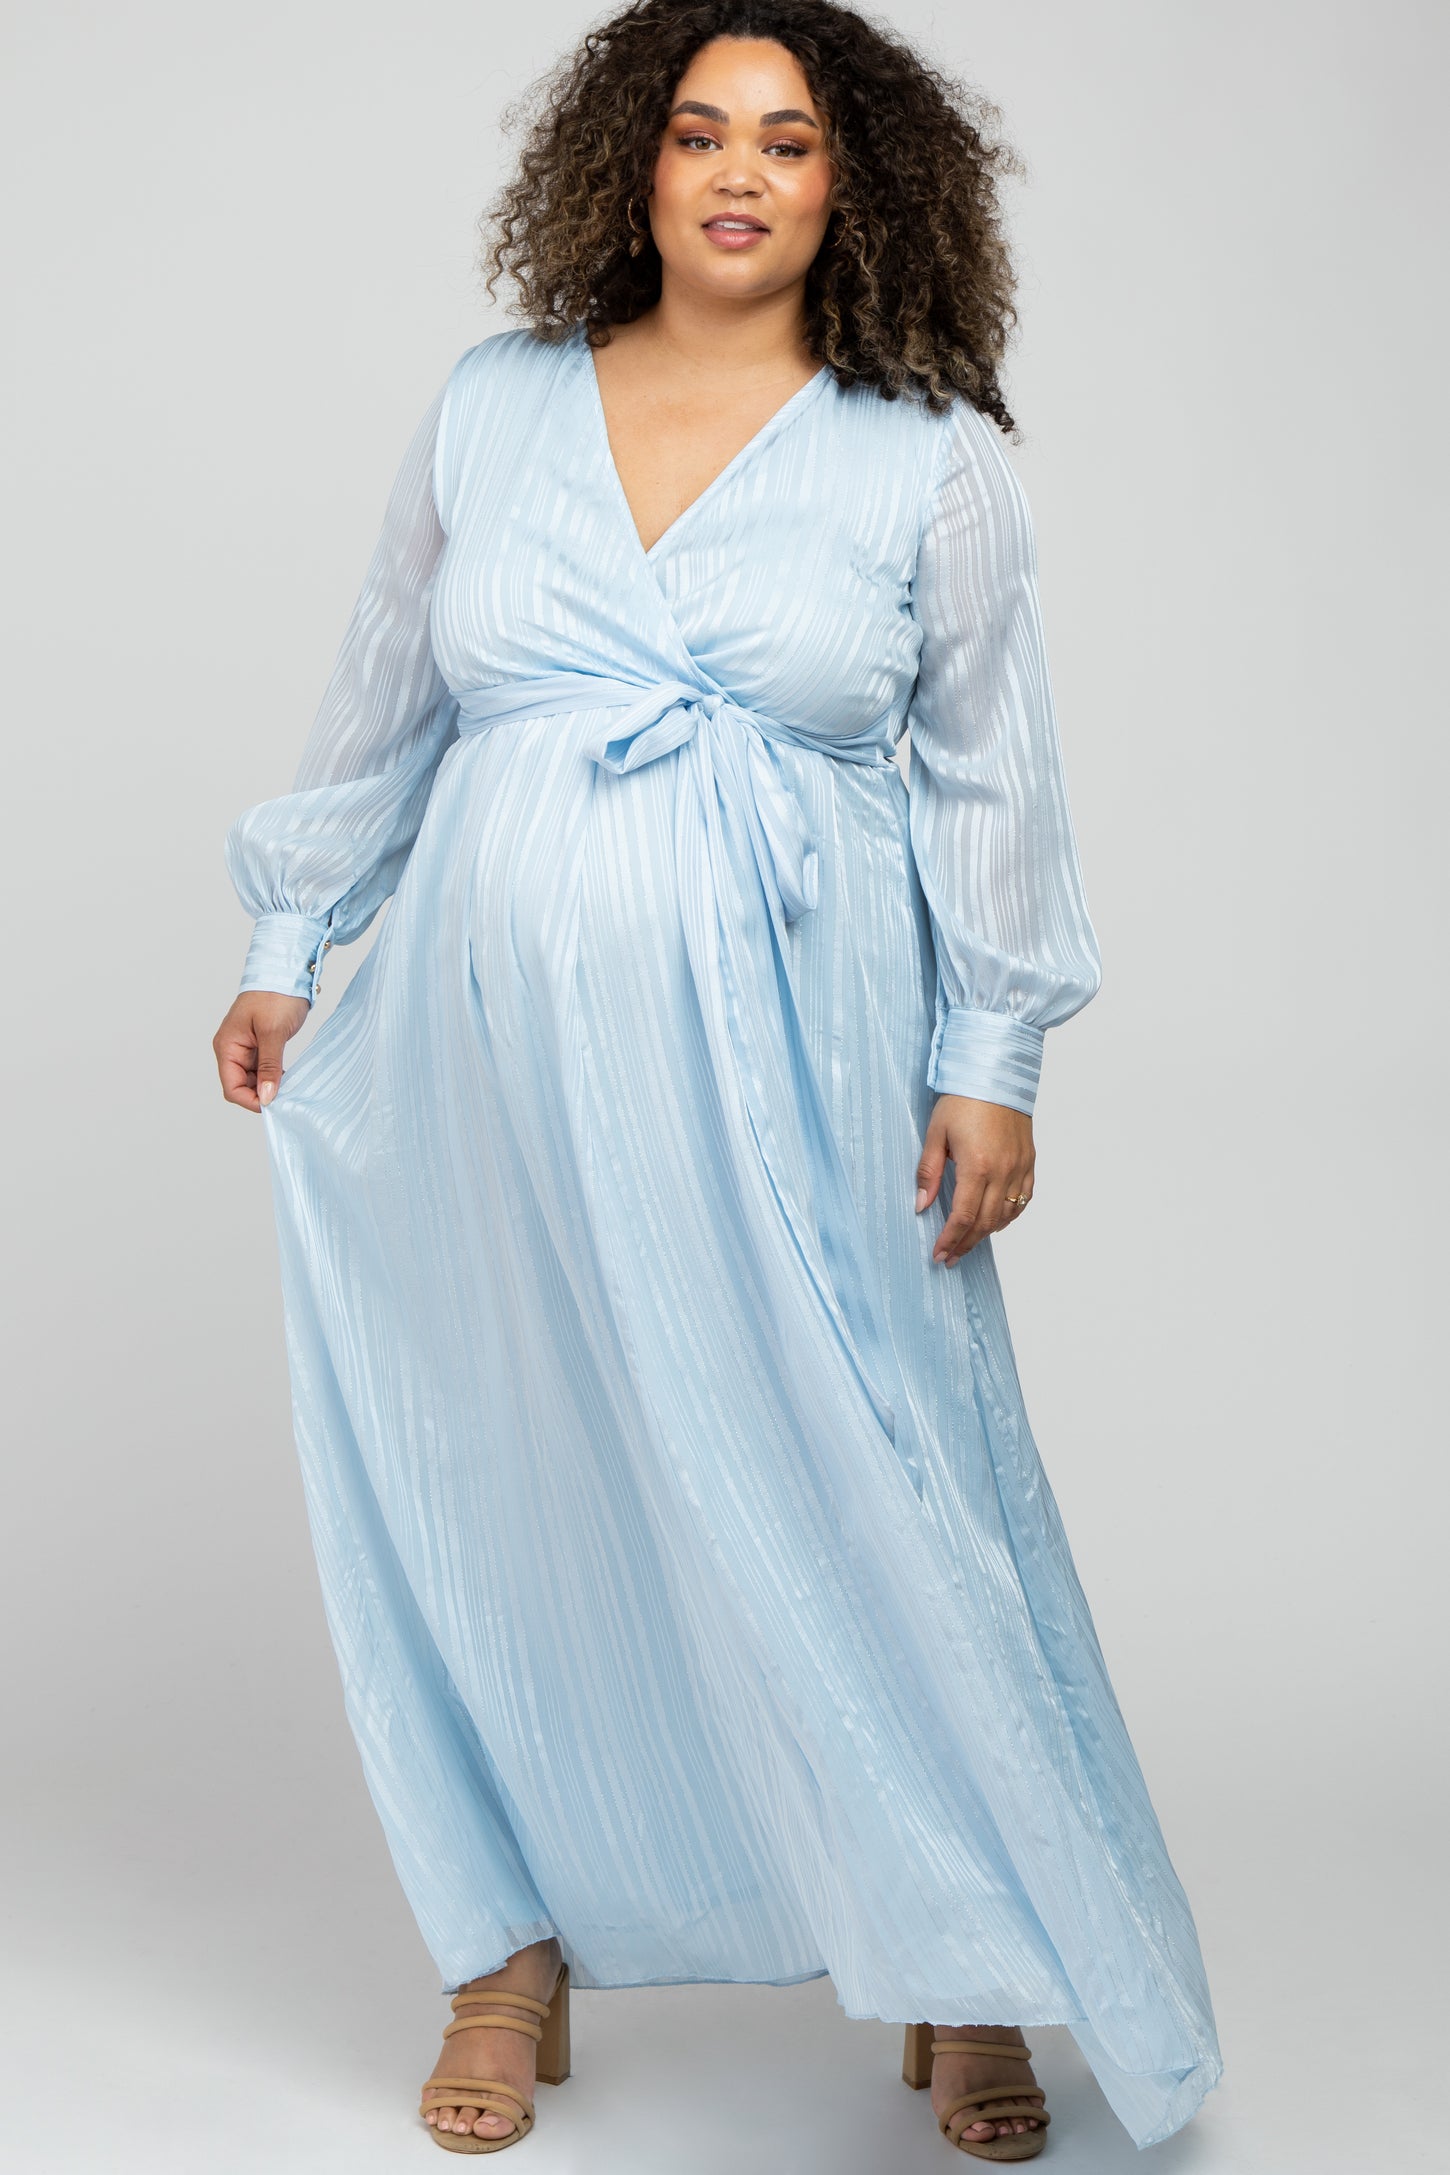 Light Blue Chiffon Maternity Dress PinkBlush